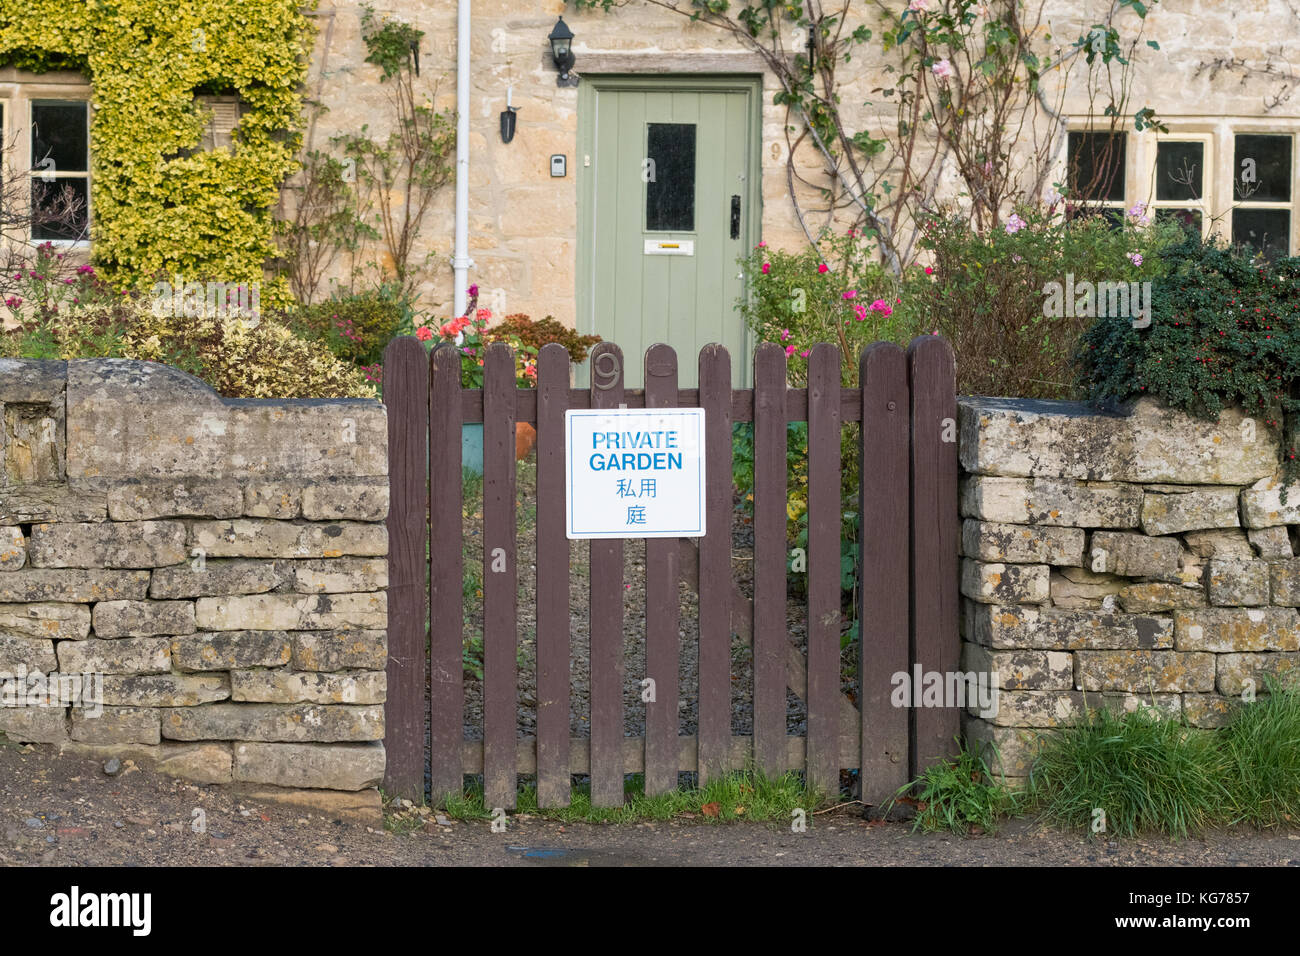 Bibury Tourism - panneau « jardin privé » sur la porte du jardin écrit en anglais et en japonais - Bibury, Gloucestershire, Angleterre, Royaume-Uni Banque D'Images